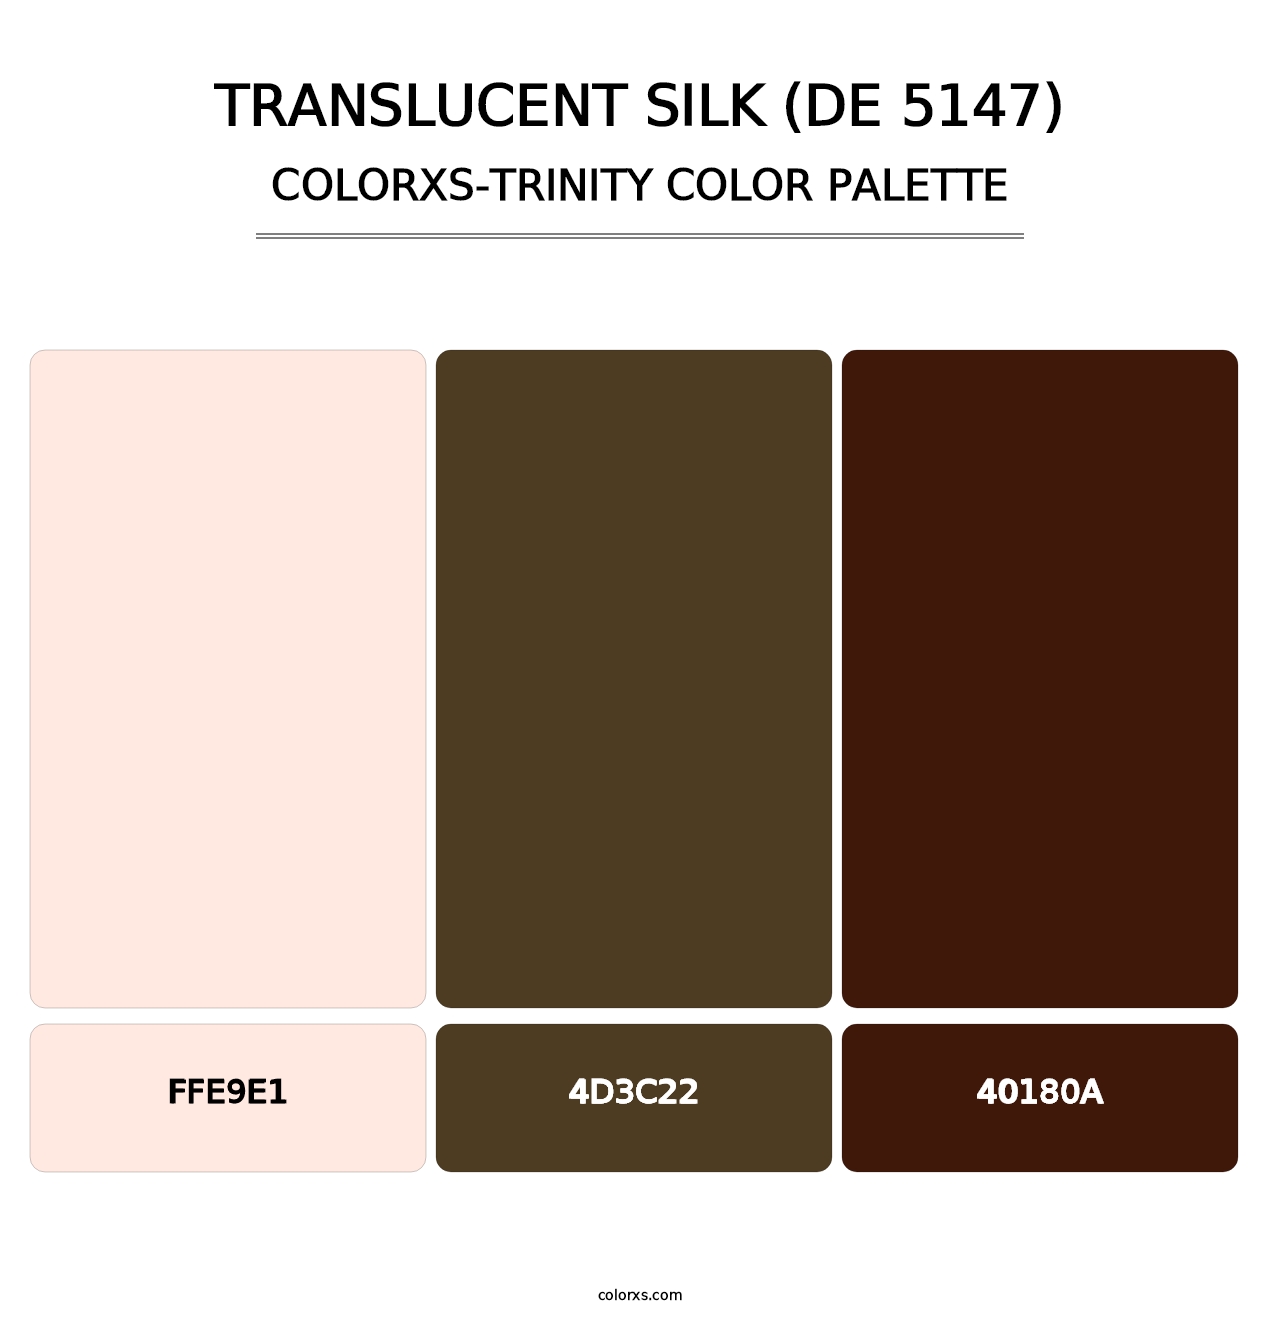 Translucent Silk (DE 5147) - Colorxs Trinity Palette